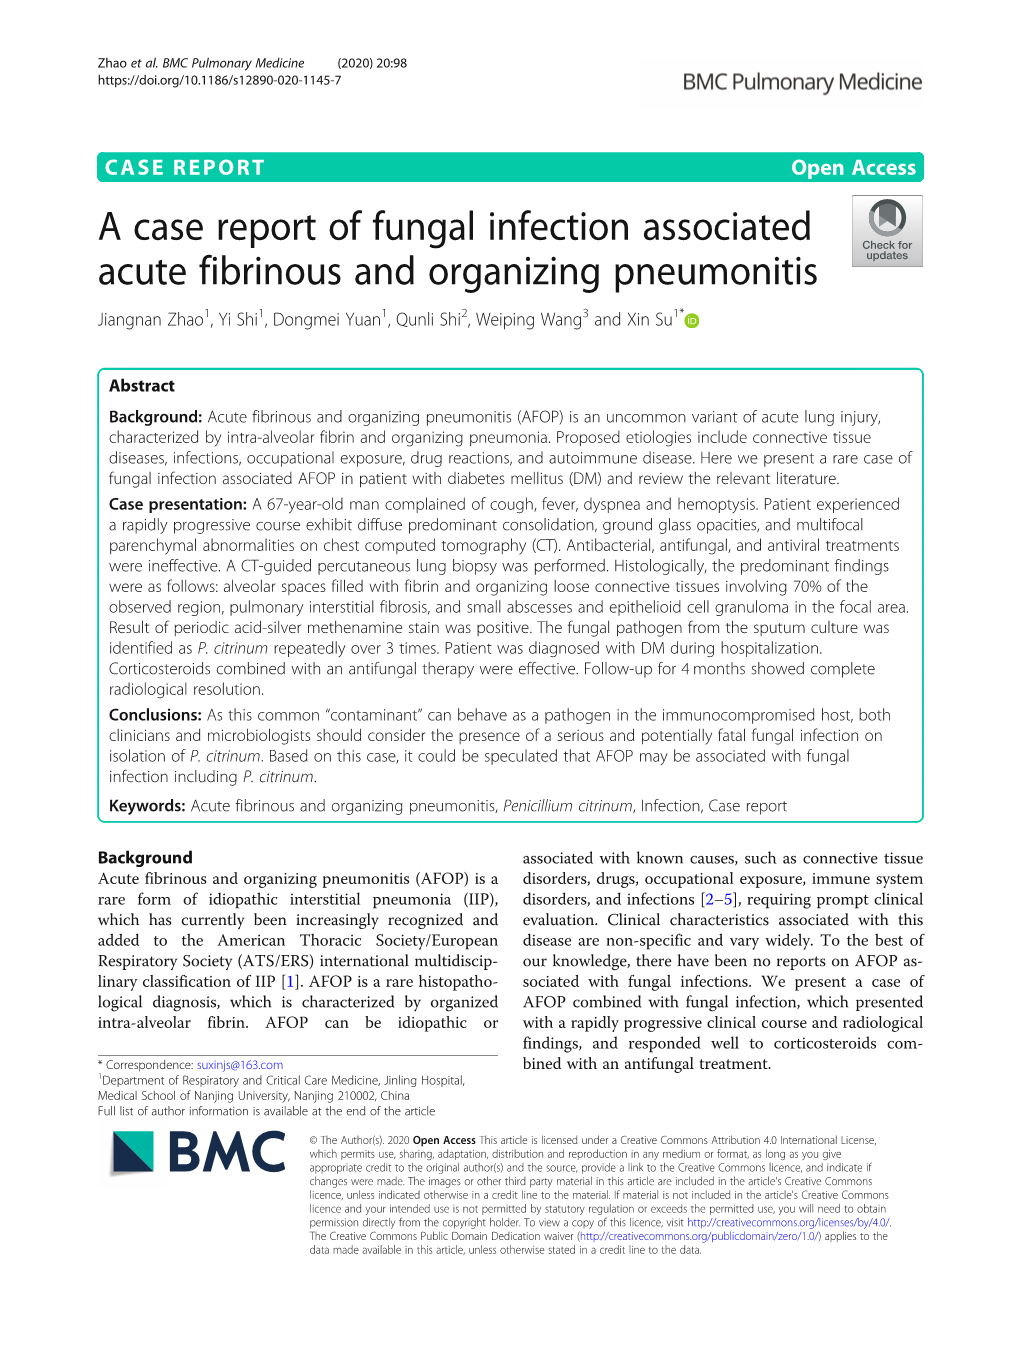 A Case Report of Fungal Infection Associated Acute Fibrinous and Organizing Pneumonitis Jiangnan Zhao1, Yi Shi1, Dongmei Yuan1, Qunli Shi2, Weiping Wang3 and Xin Su1*